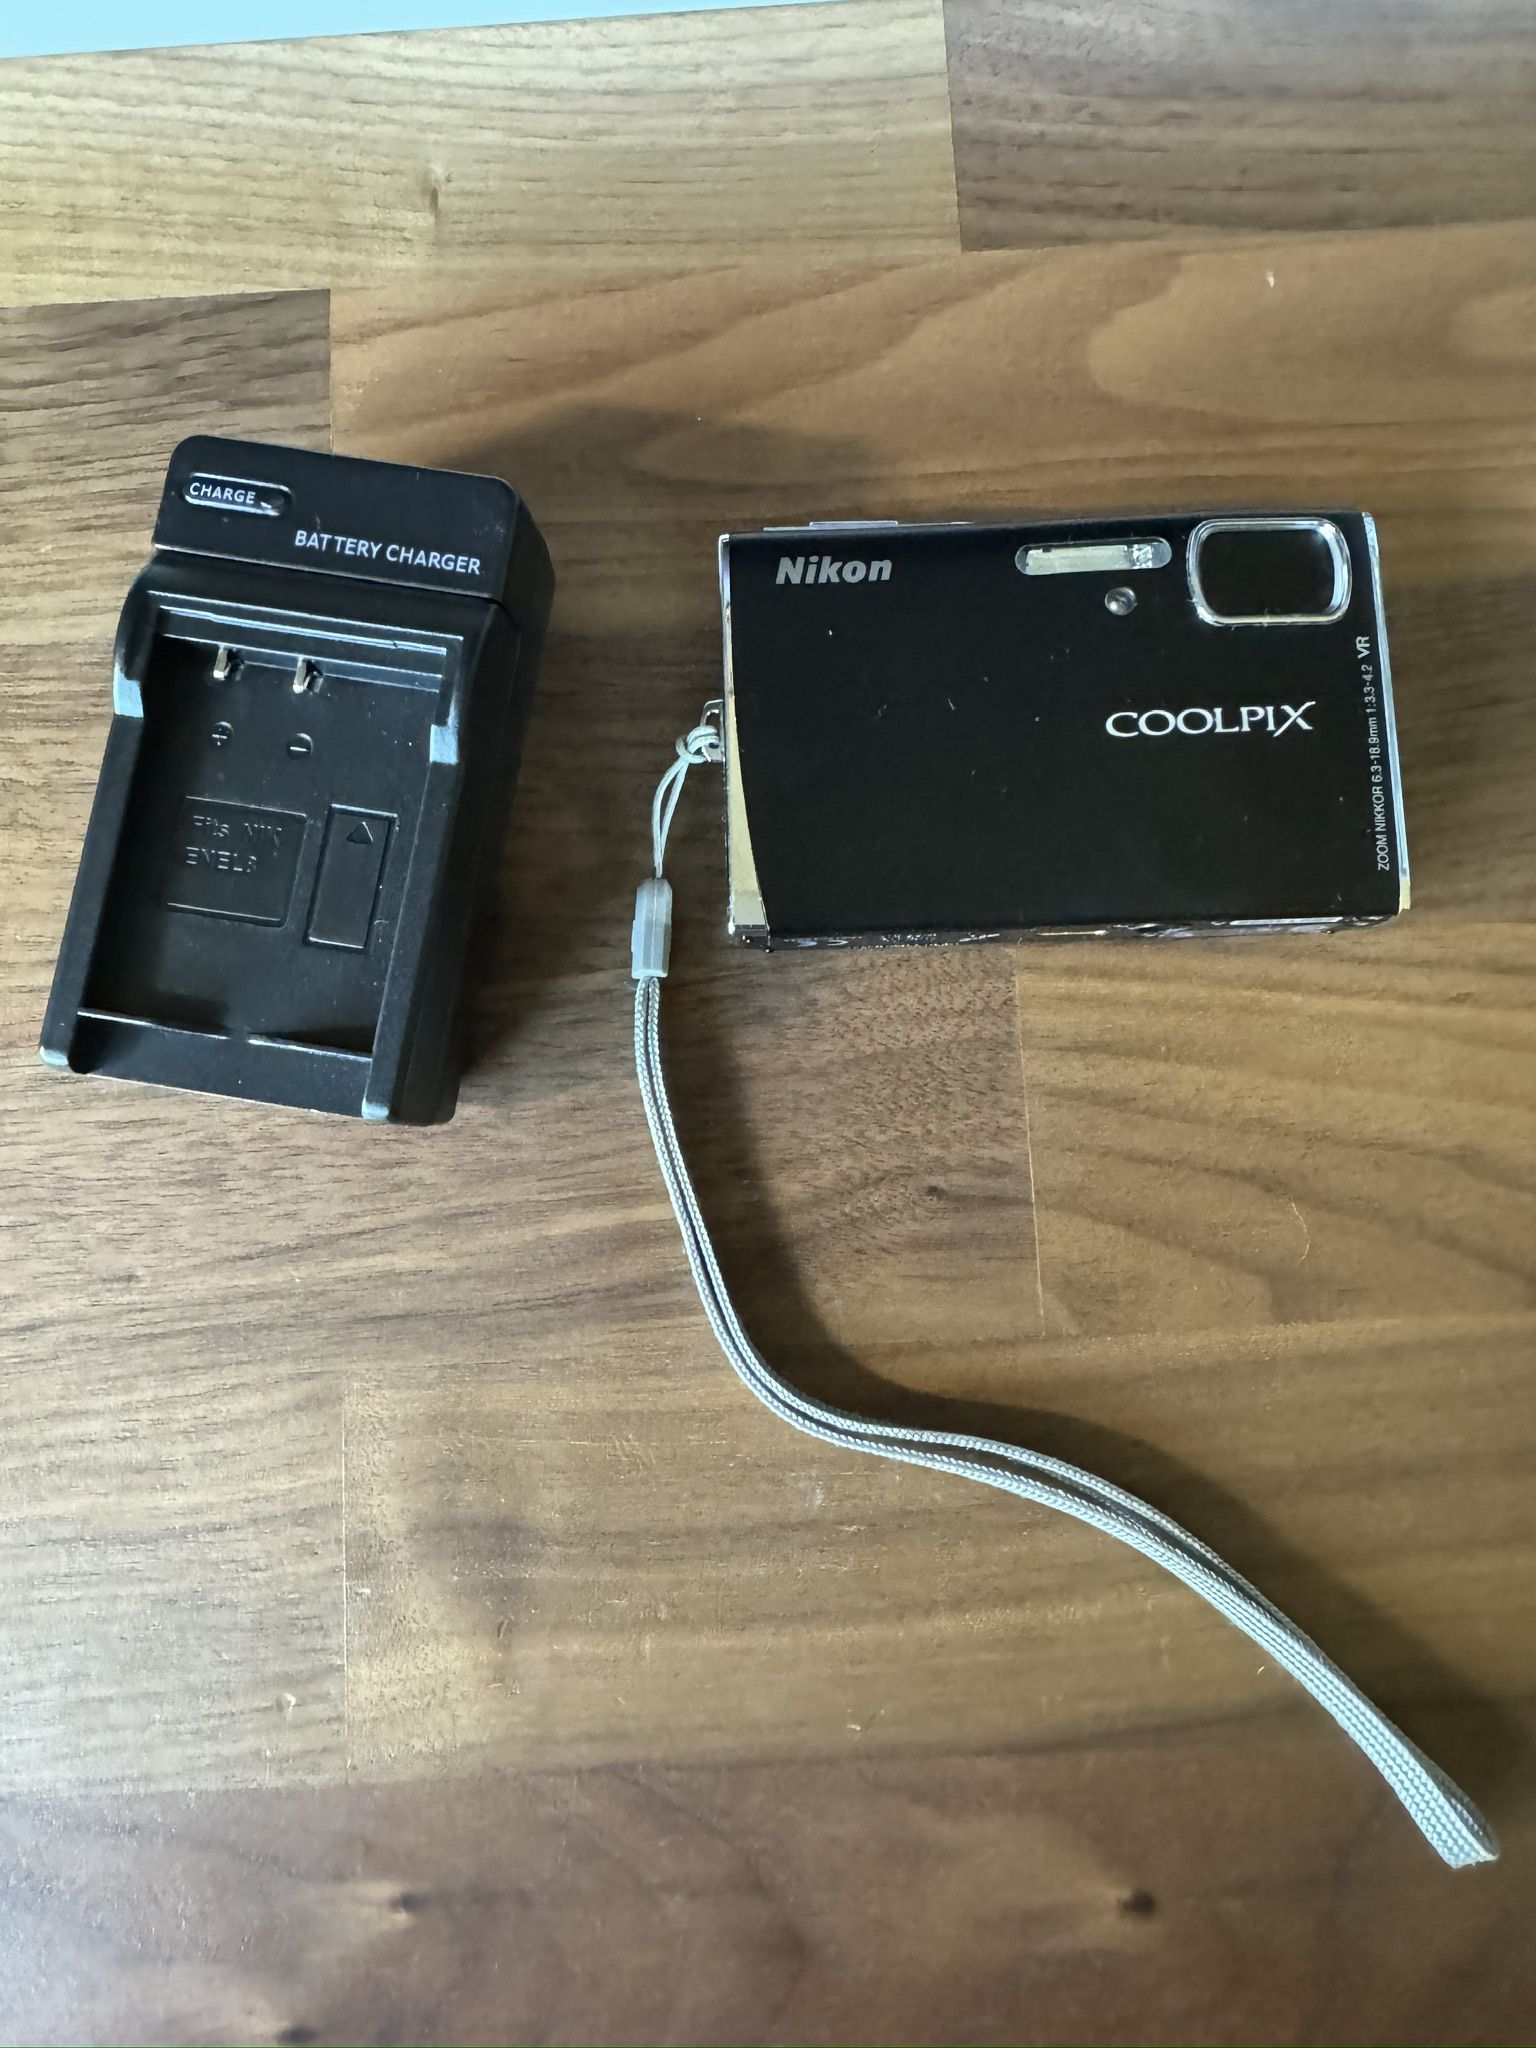 Nikon COOLPIX S51 8.1 MP Digital Camera